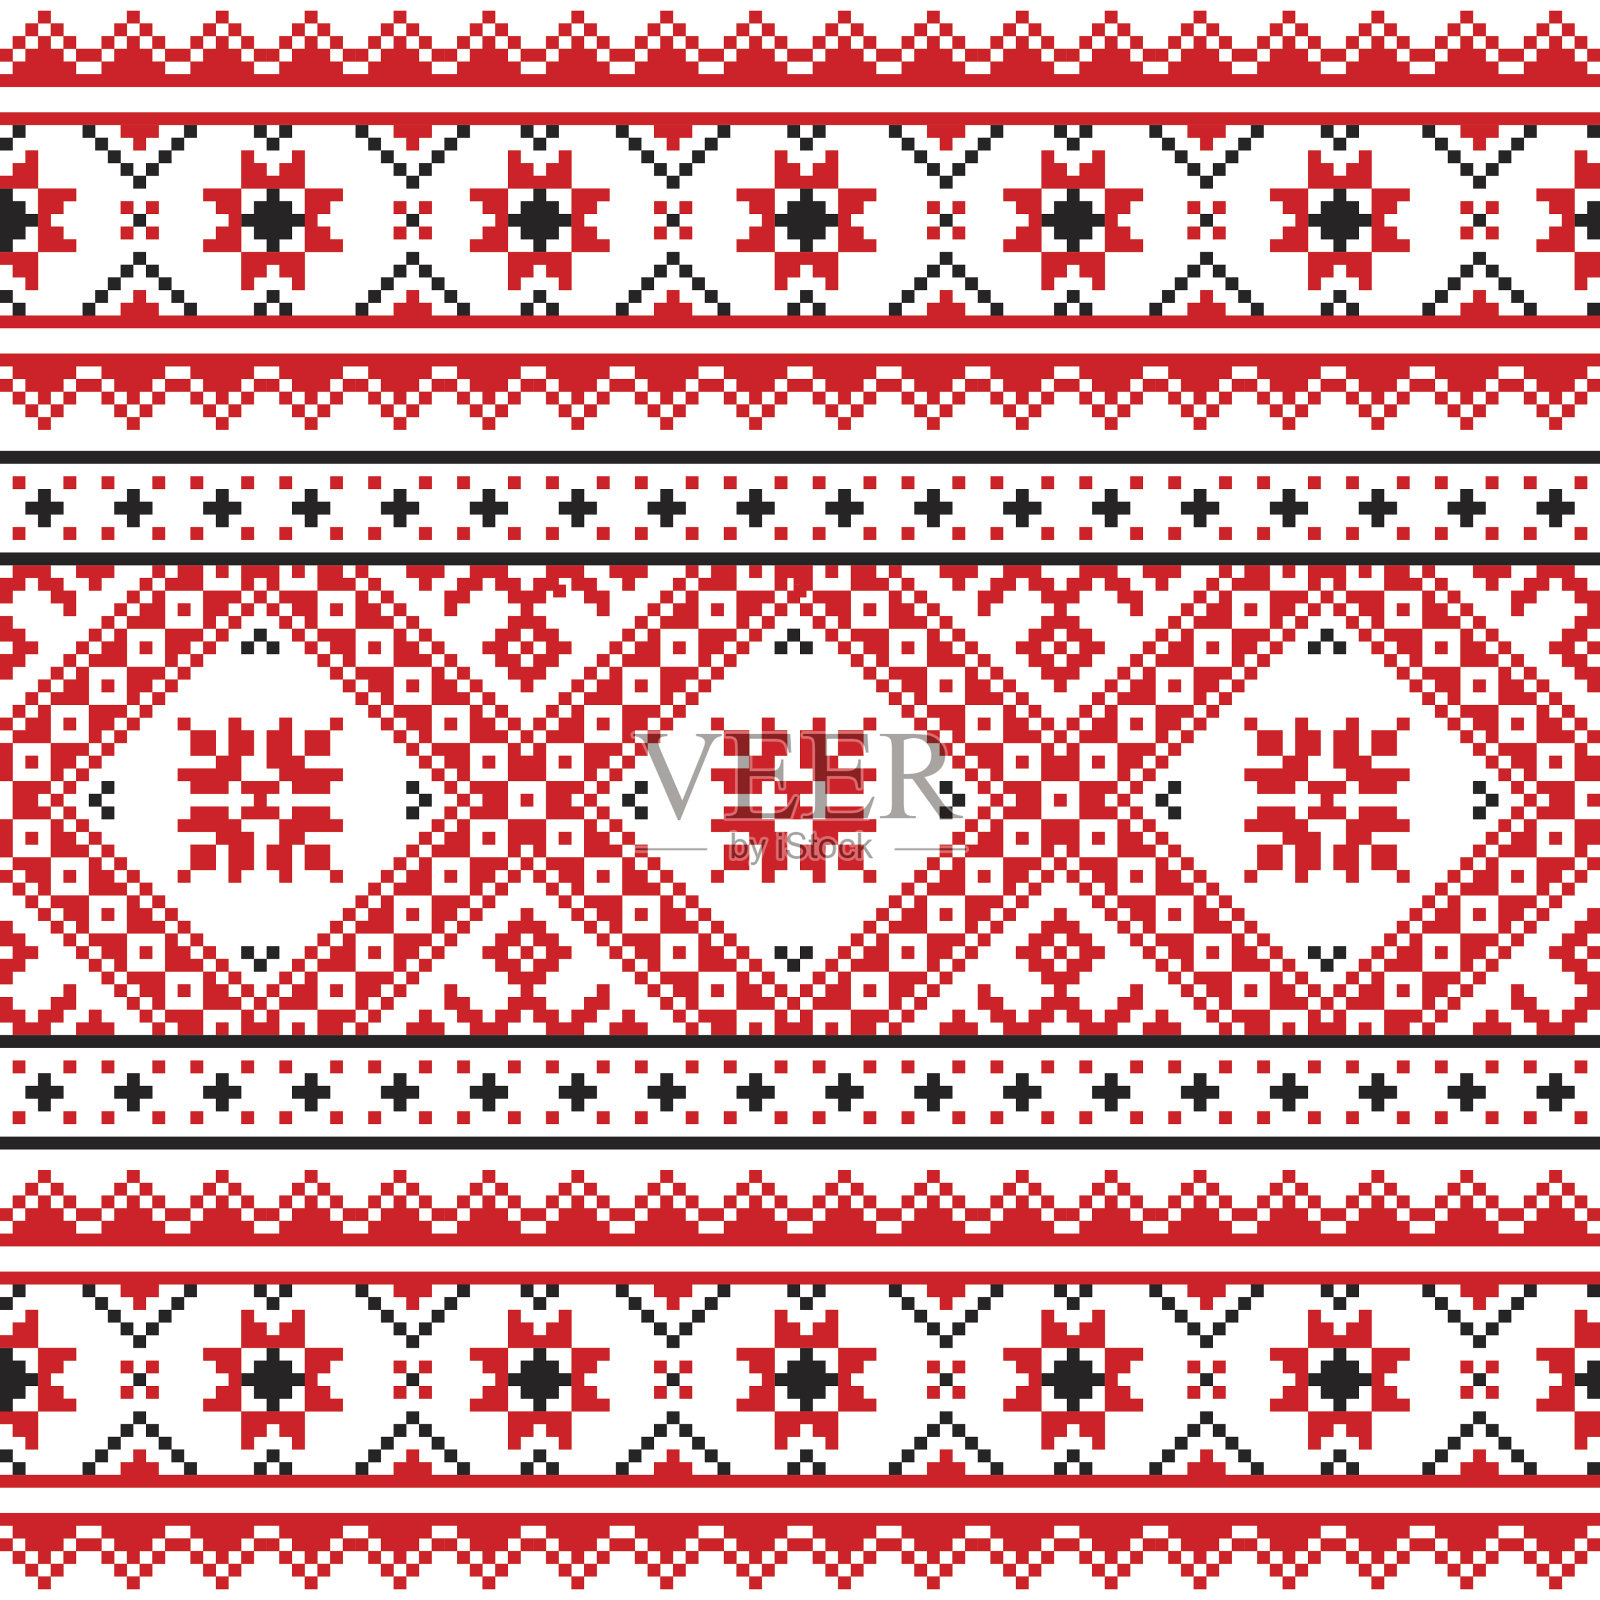 乌克兰传统民间编织红色刺绣图案插画图片素材